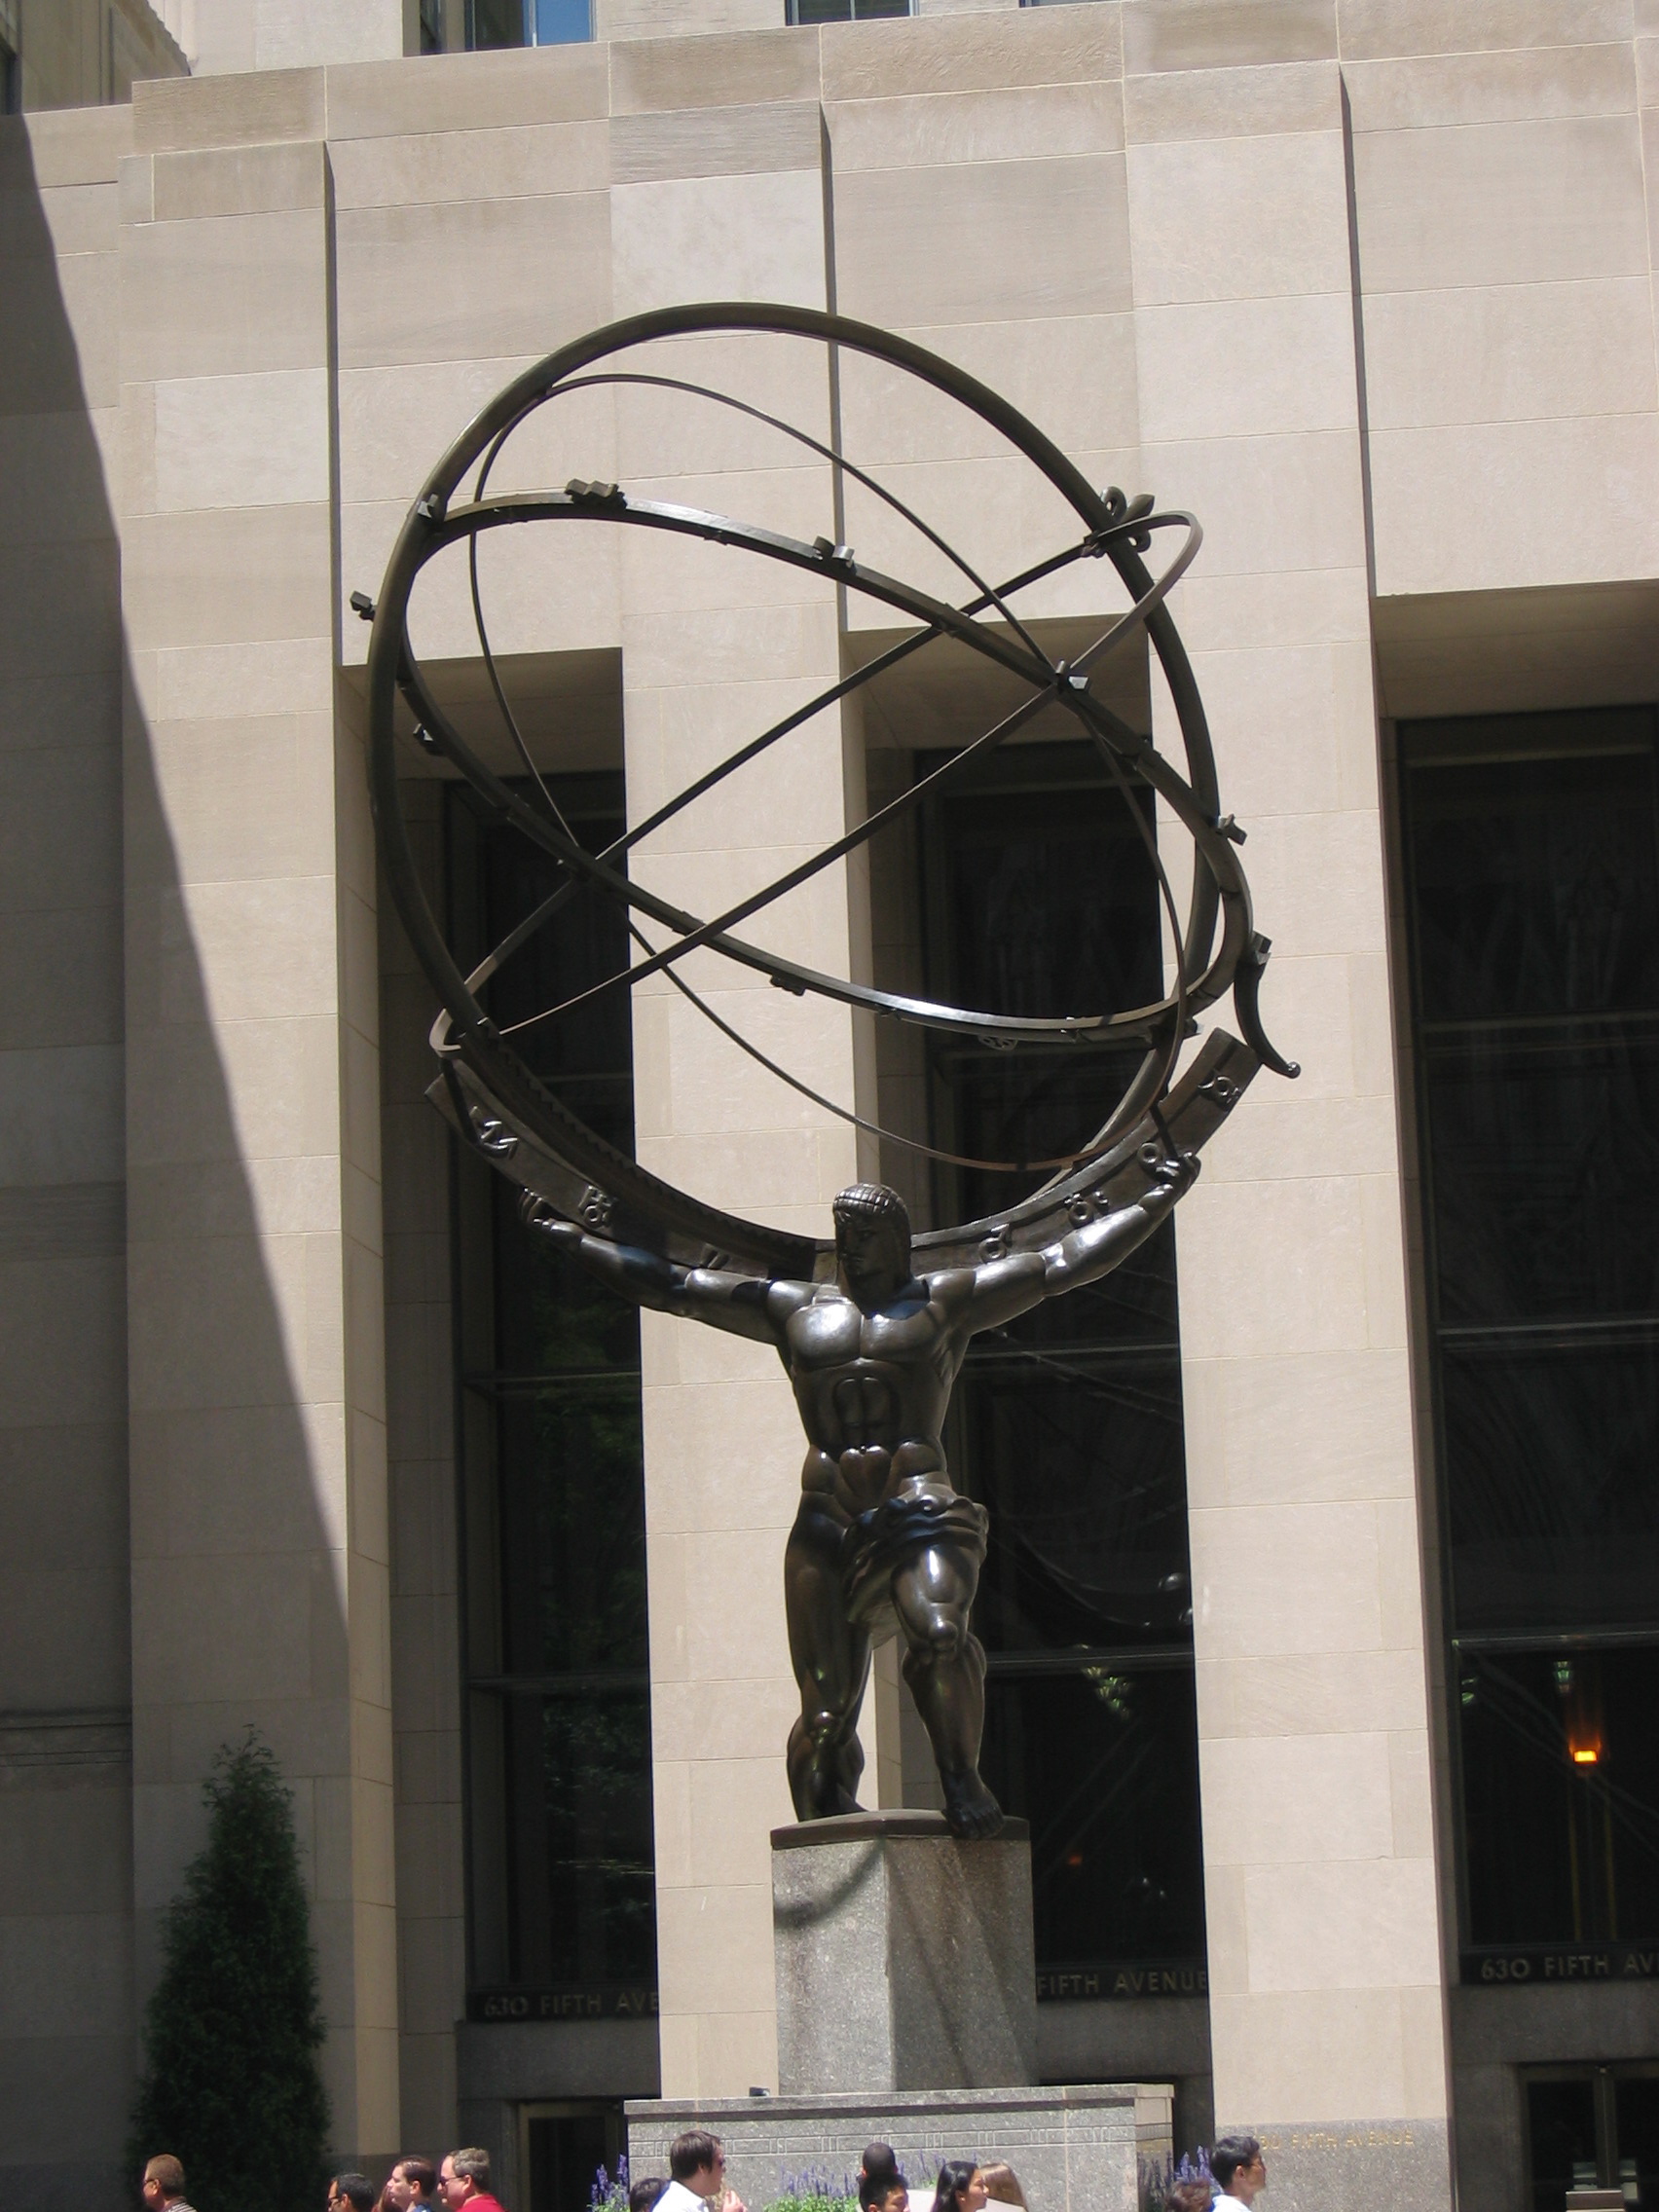 Atlas sculpture in front of Rockefellercenter Center